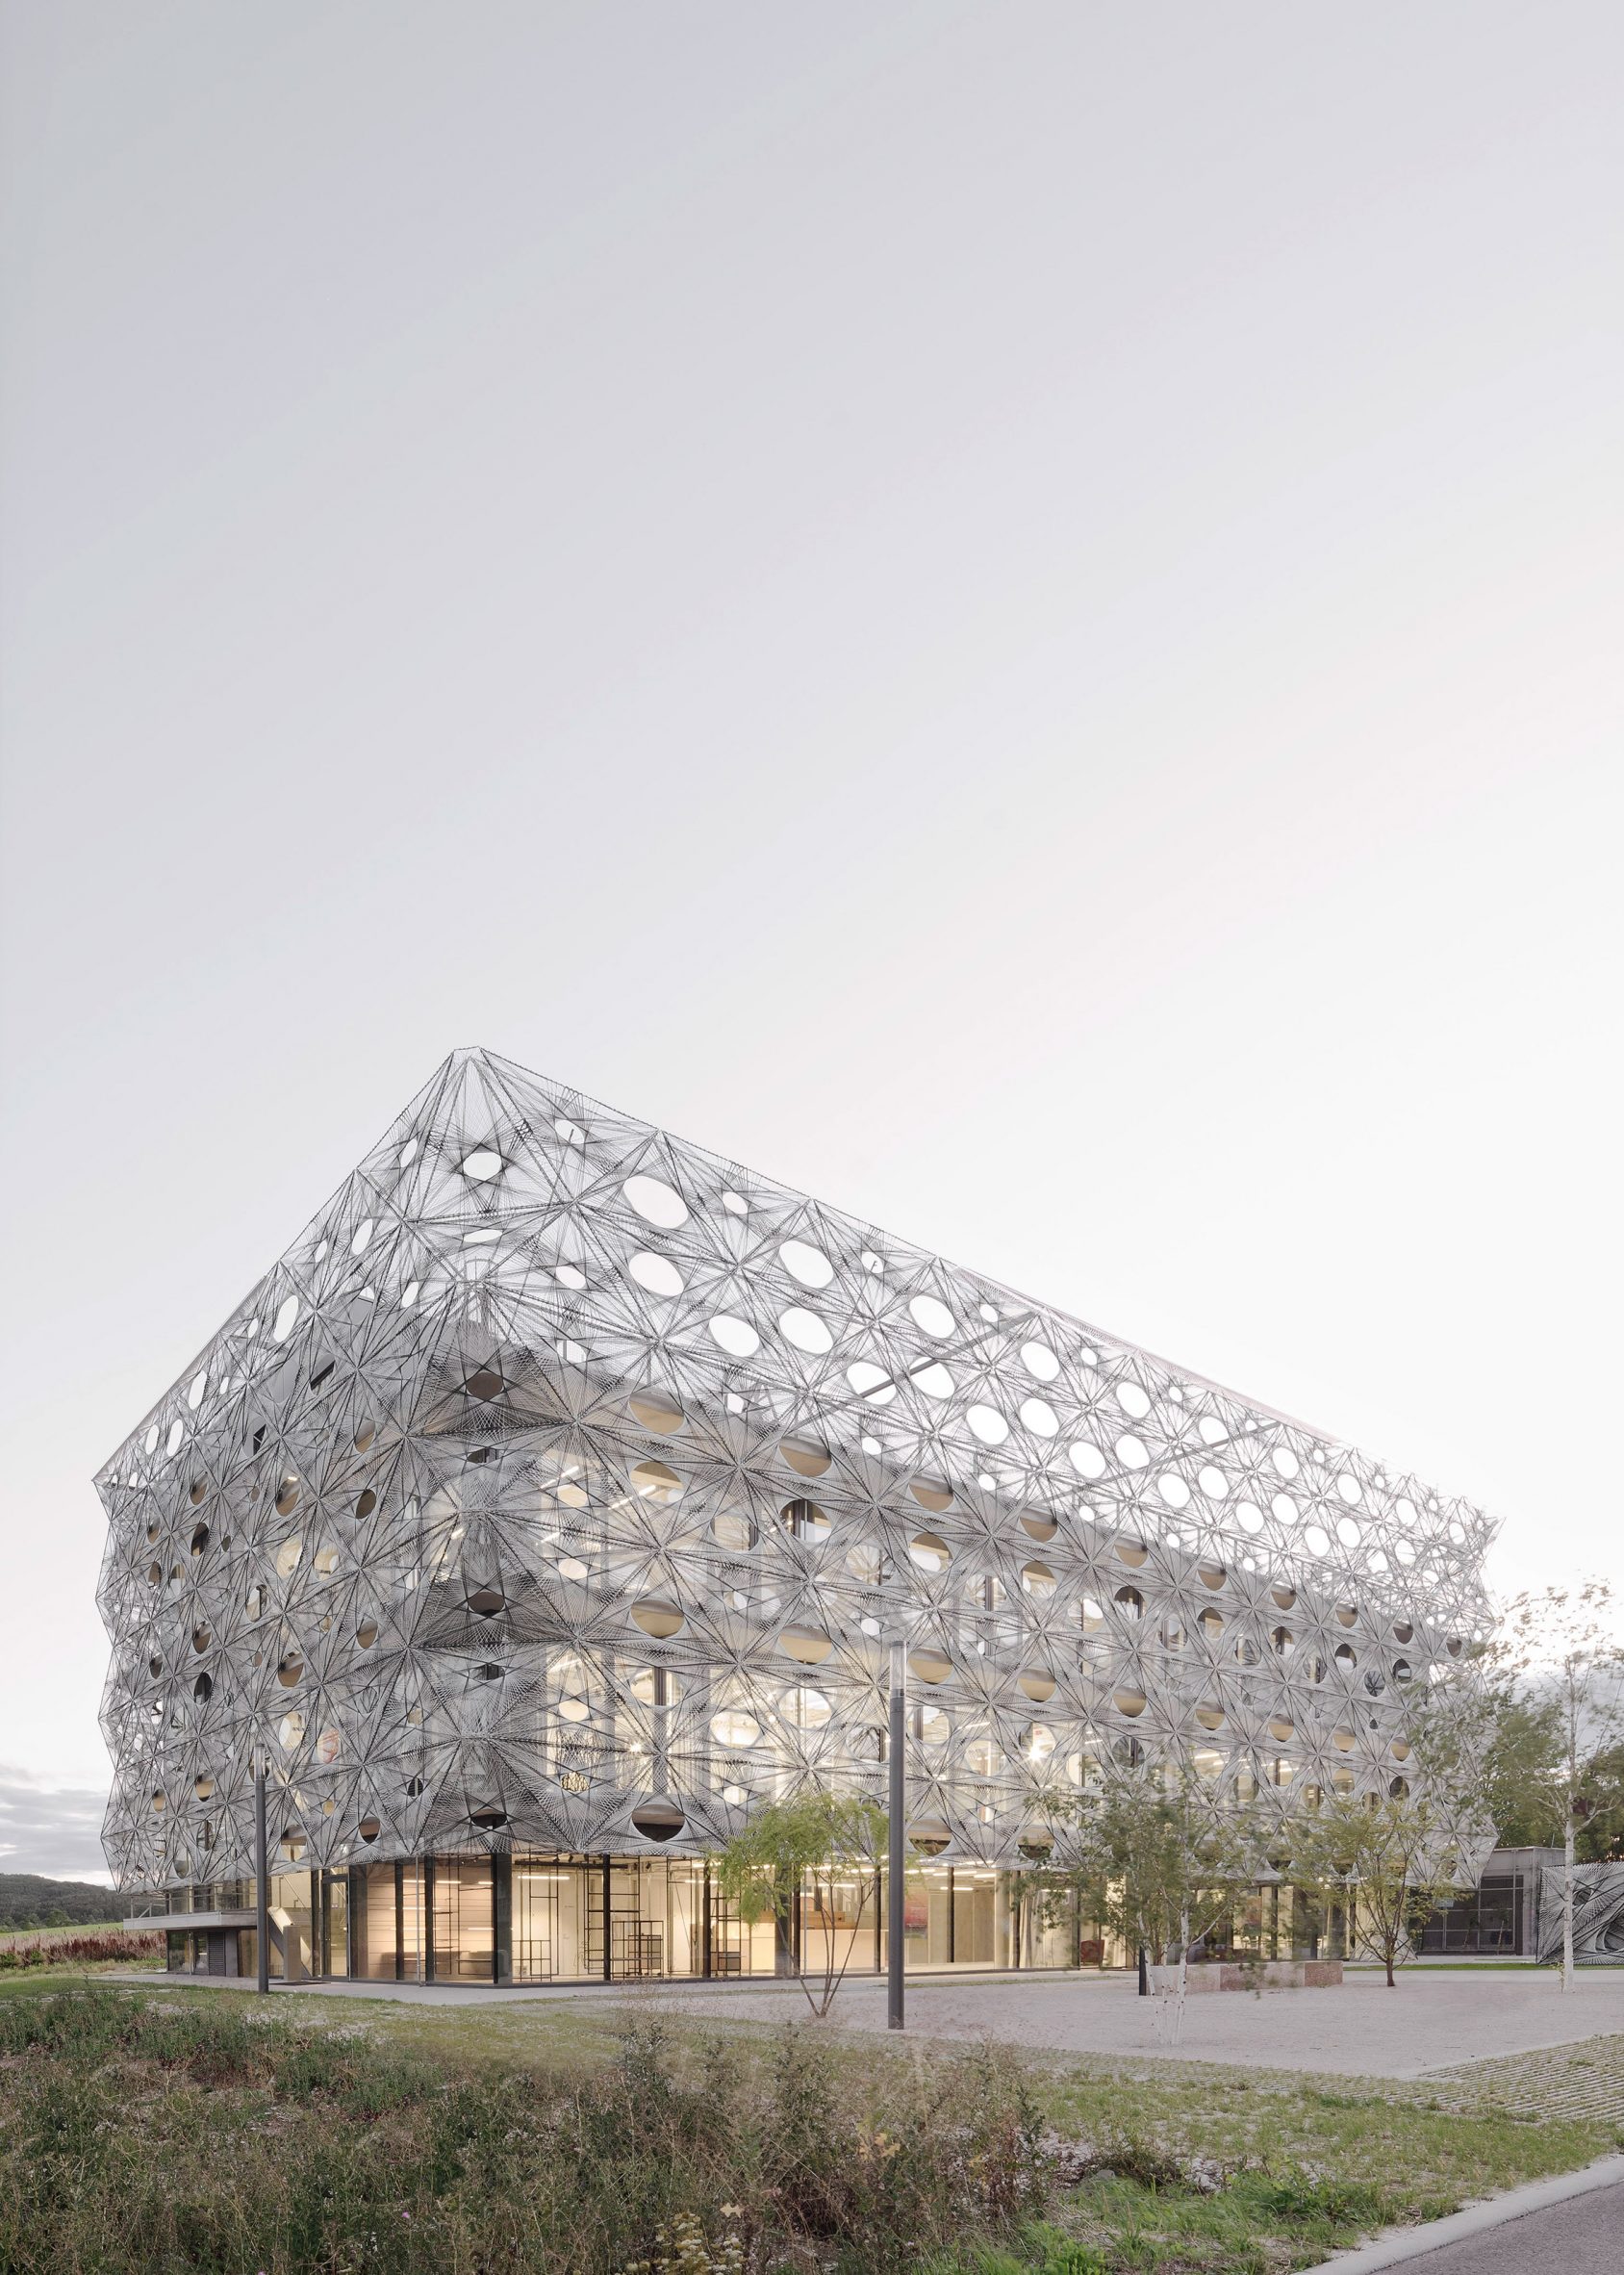 Texoversum textiles building for the Reutlingen University of Applied Sciences